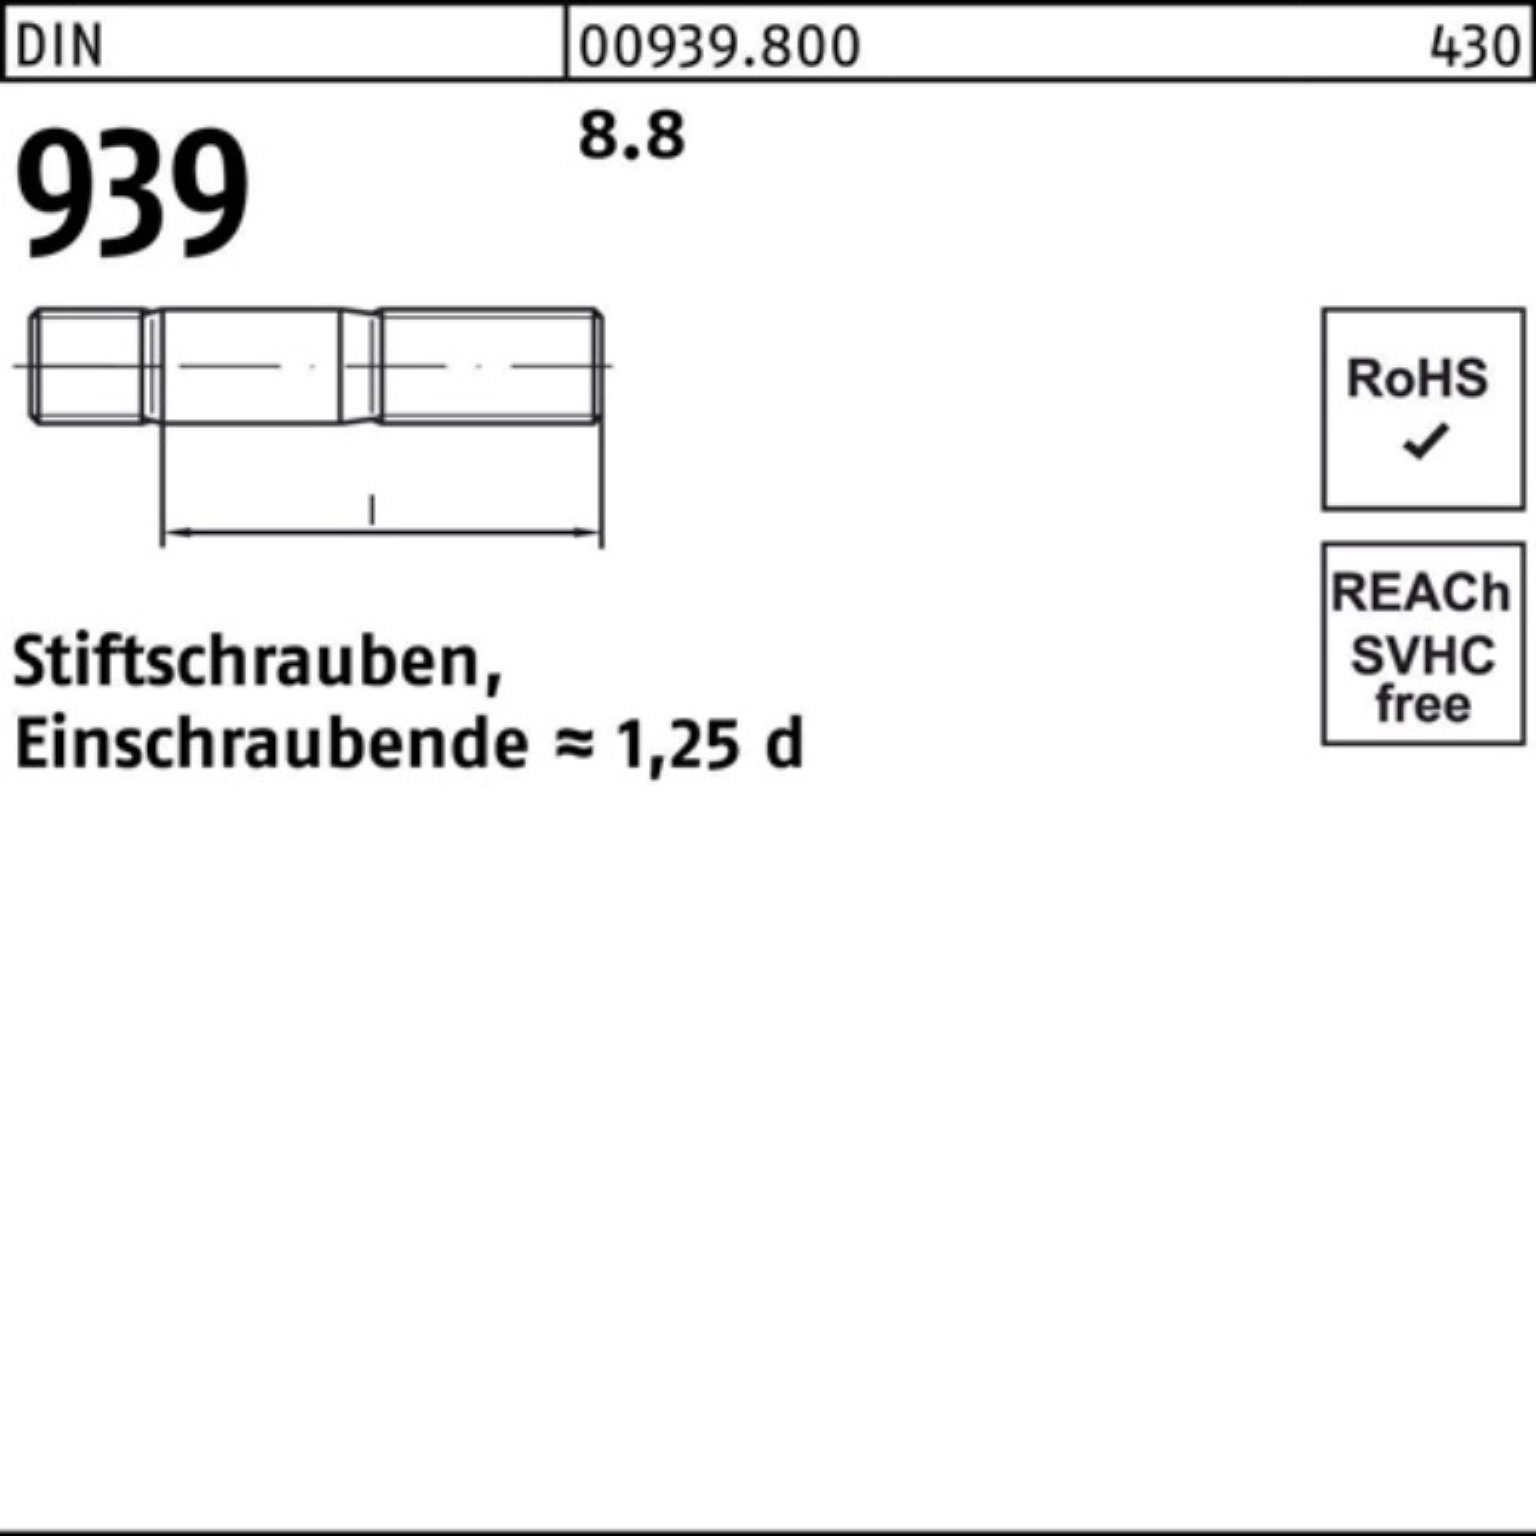 Stiftschraube DIN 45 S Stiftschraube Reyher 100er M20x Einschraubende=1,25d 8.8 939 Pack 10